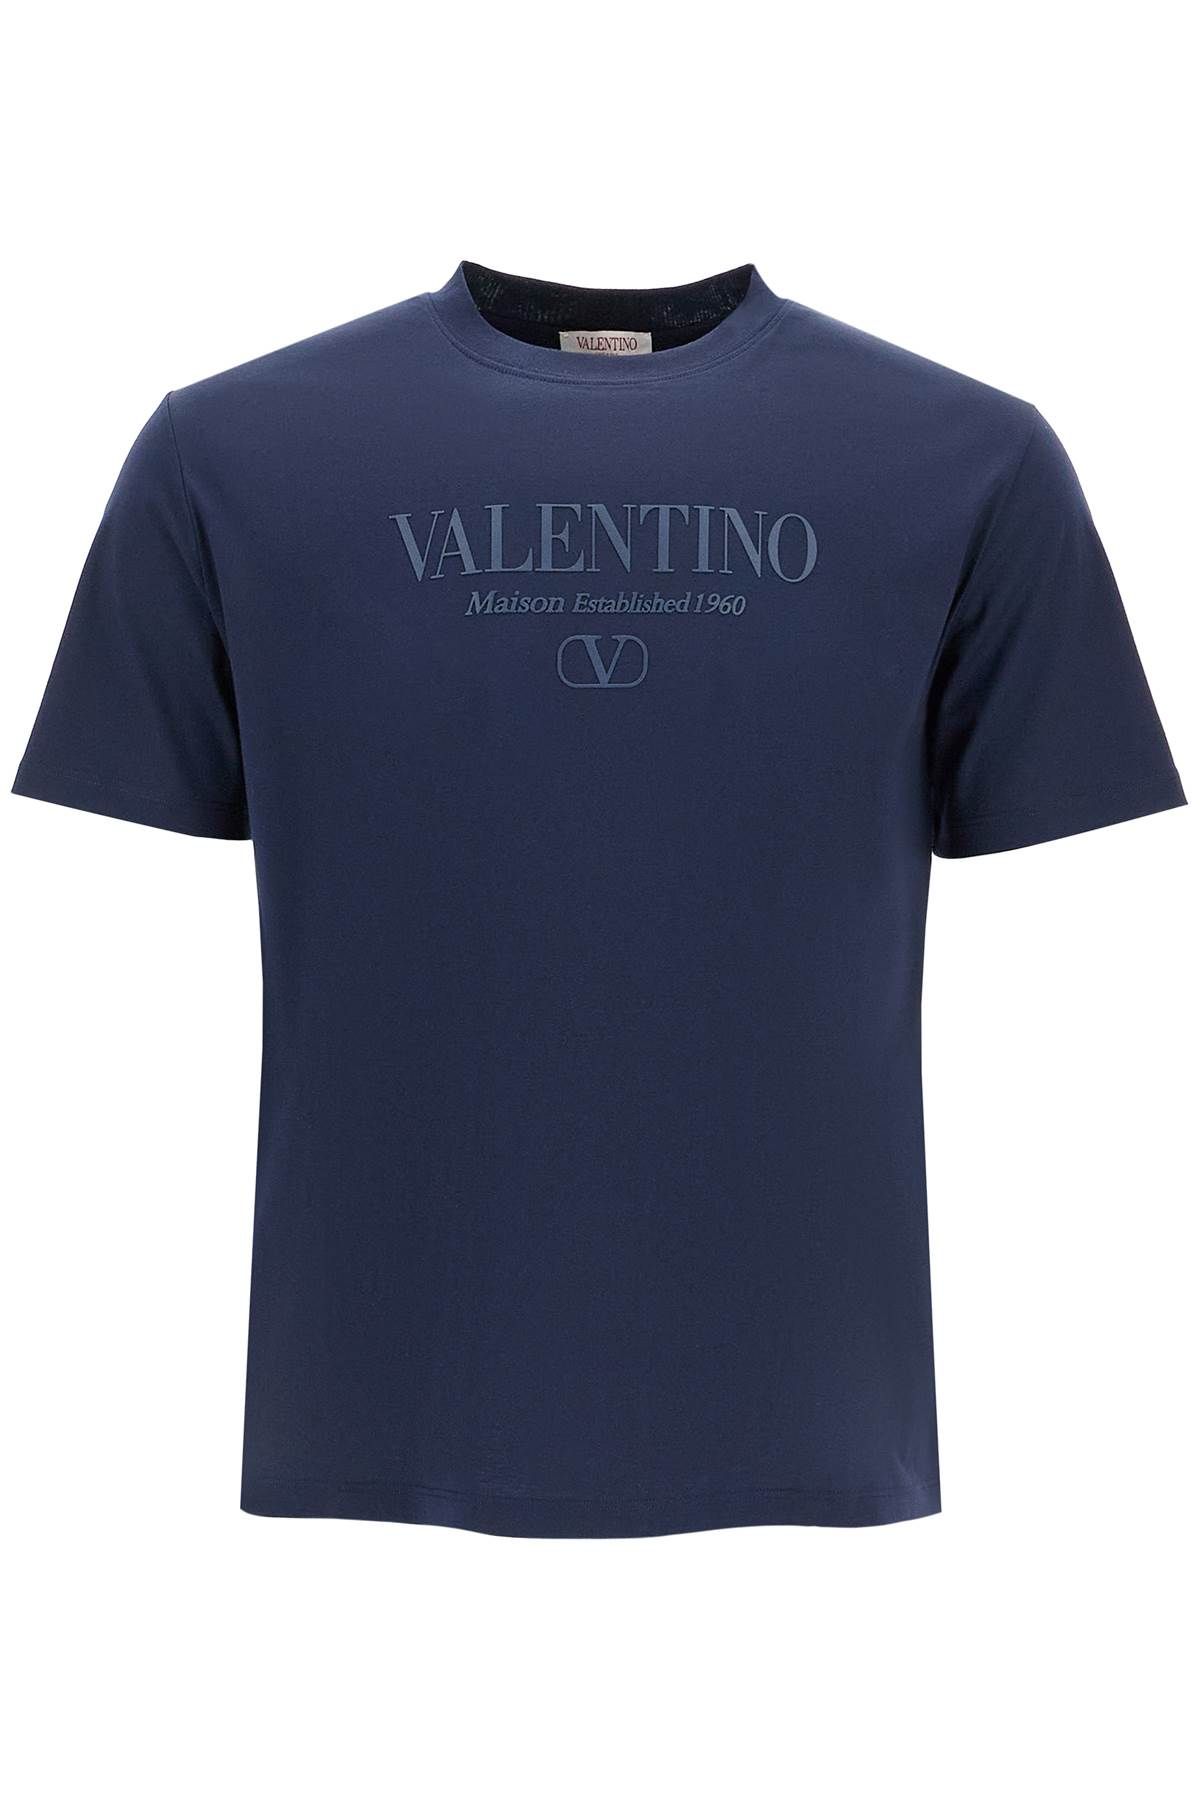 VALENTINO GARAVANI VALENTINO GARAVANI t-shirt with logo print